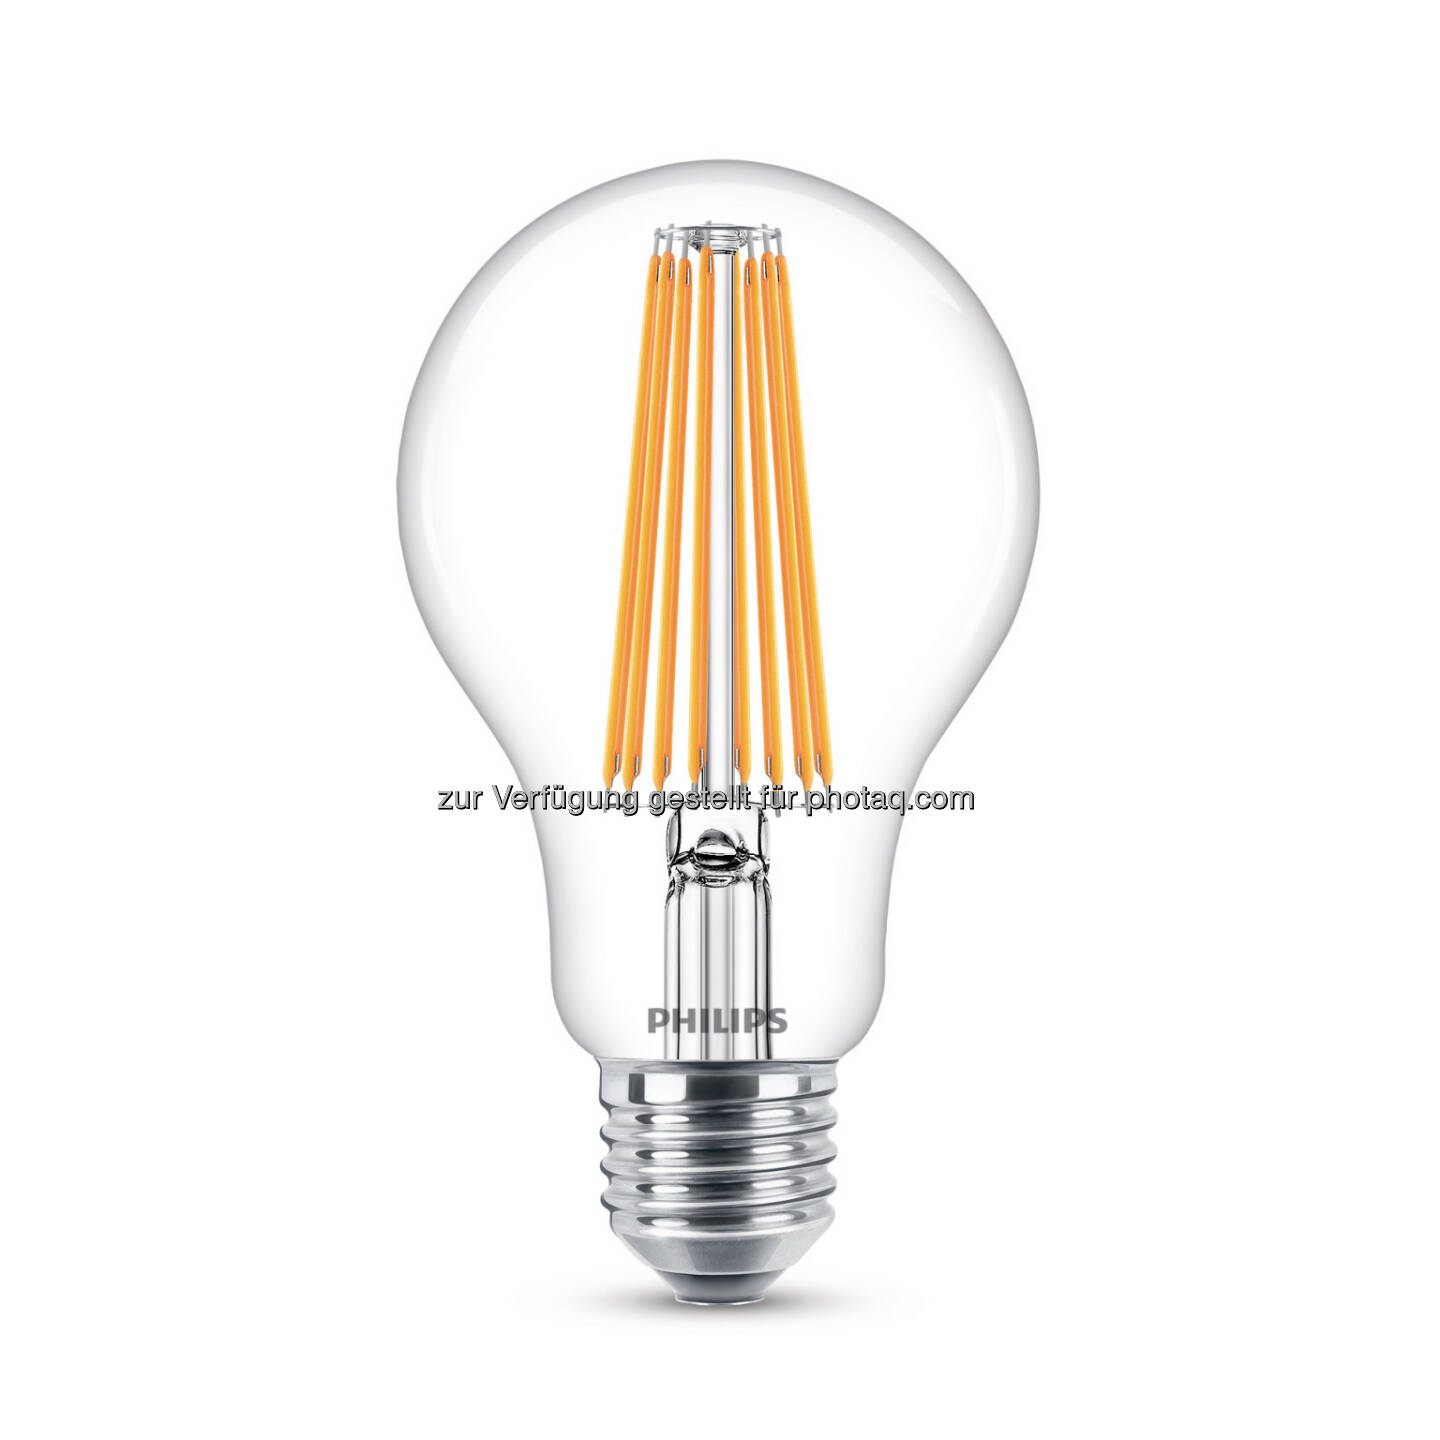 Die LED-Technologie ermöglicht Energieeinsparungen von 80%. Besonders beliebt sind LED Filament Lampen mit ihrem dekoraktiven Aspekt. - Philips Lighting Austria GmbH: Nachhaltigkeit als Herzstück der Geschäftsstrategie von Philips Lighting (Fotocredit: Philips Lighting)